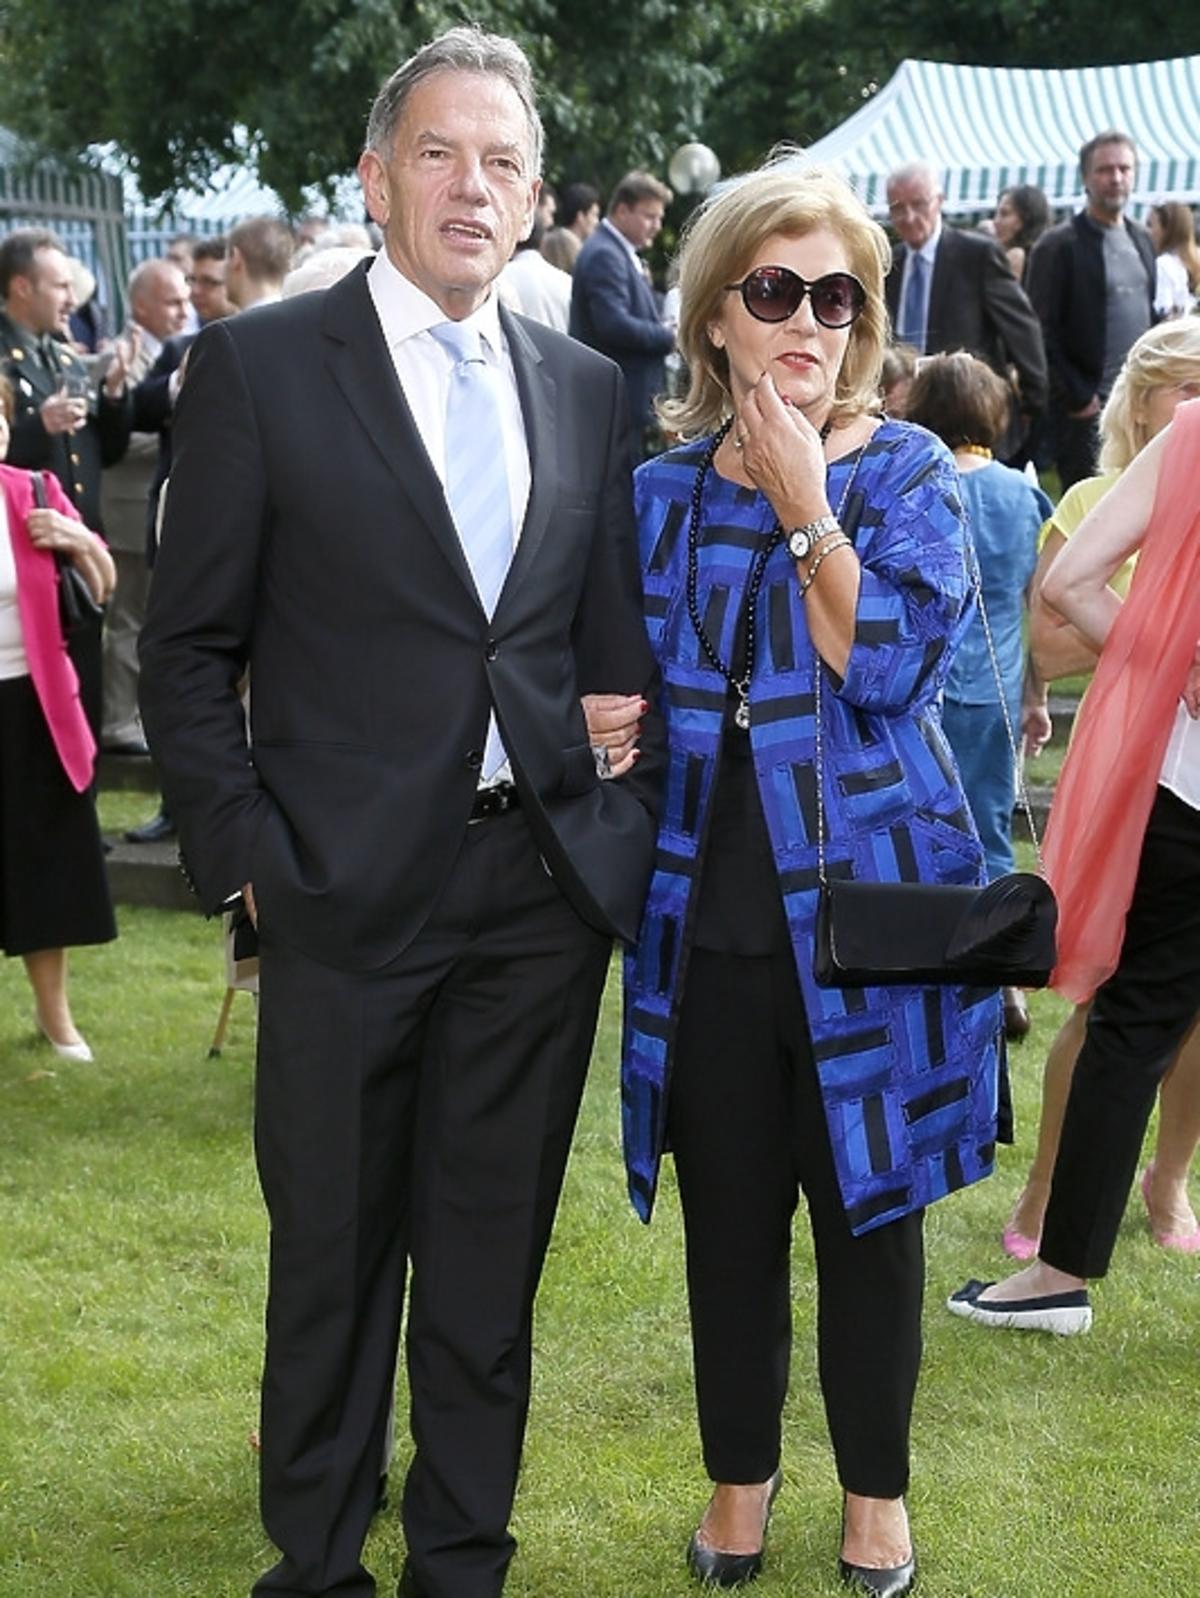 Teresa Rosati z mężem na Francuskim Święto Narodowe w Warszawie 